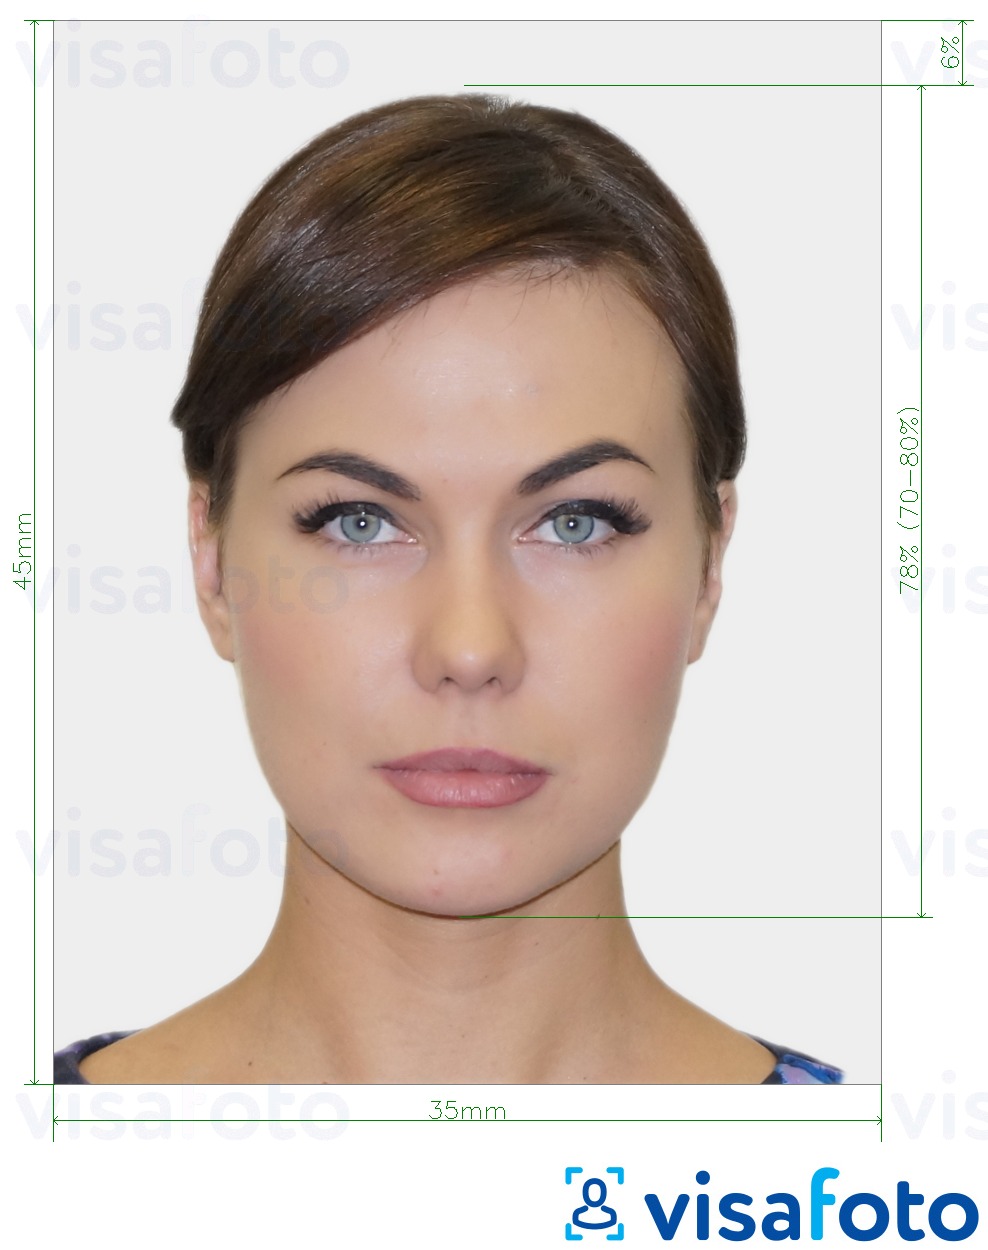 Приклад фотографії для Біометрична паспортна фотографія з точними специфікаціями розміру